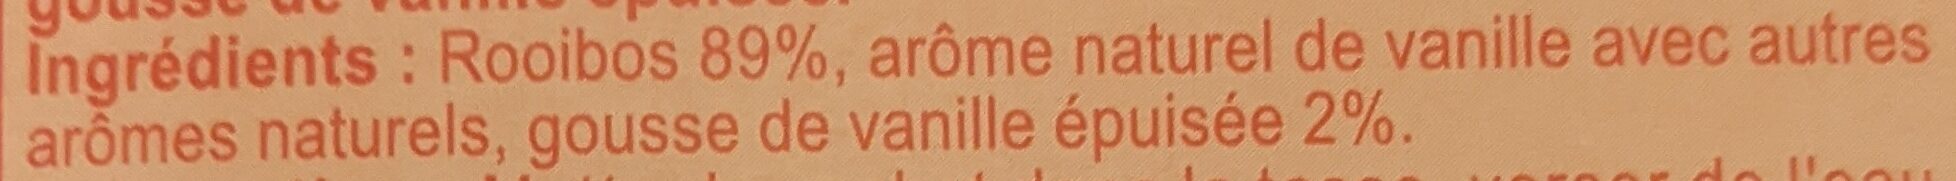 Infusion rooibos saveur vanille - Ingredienti - fr